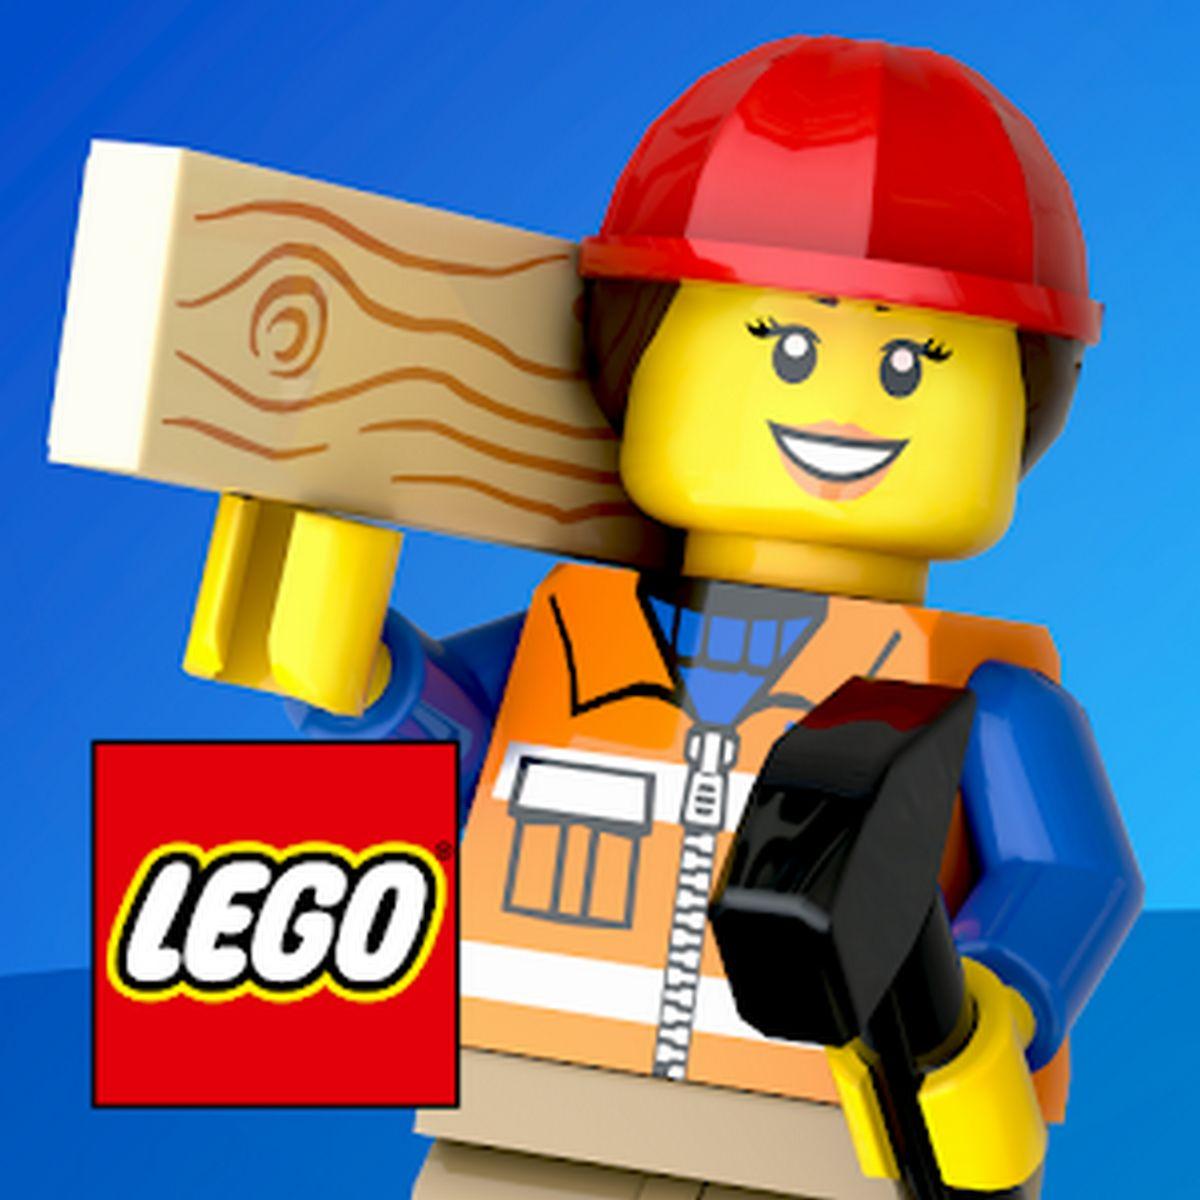 LEGO Tower APK MOD v1.21.0 (Dinero infinito)